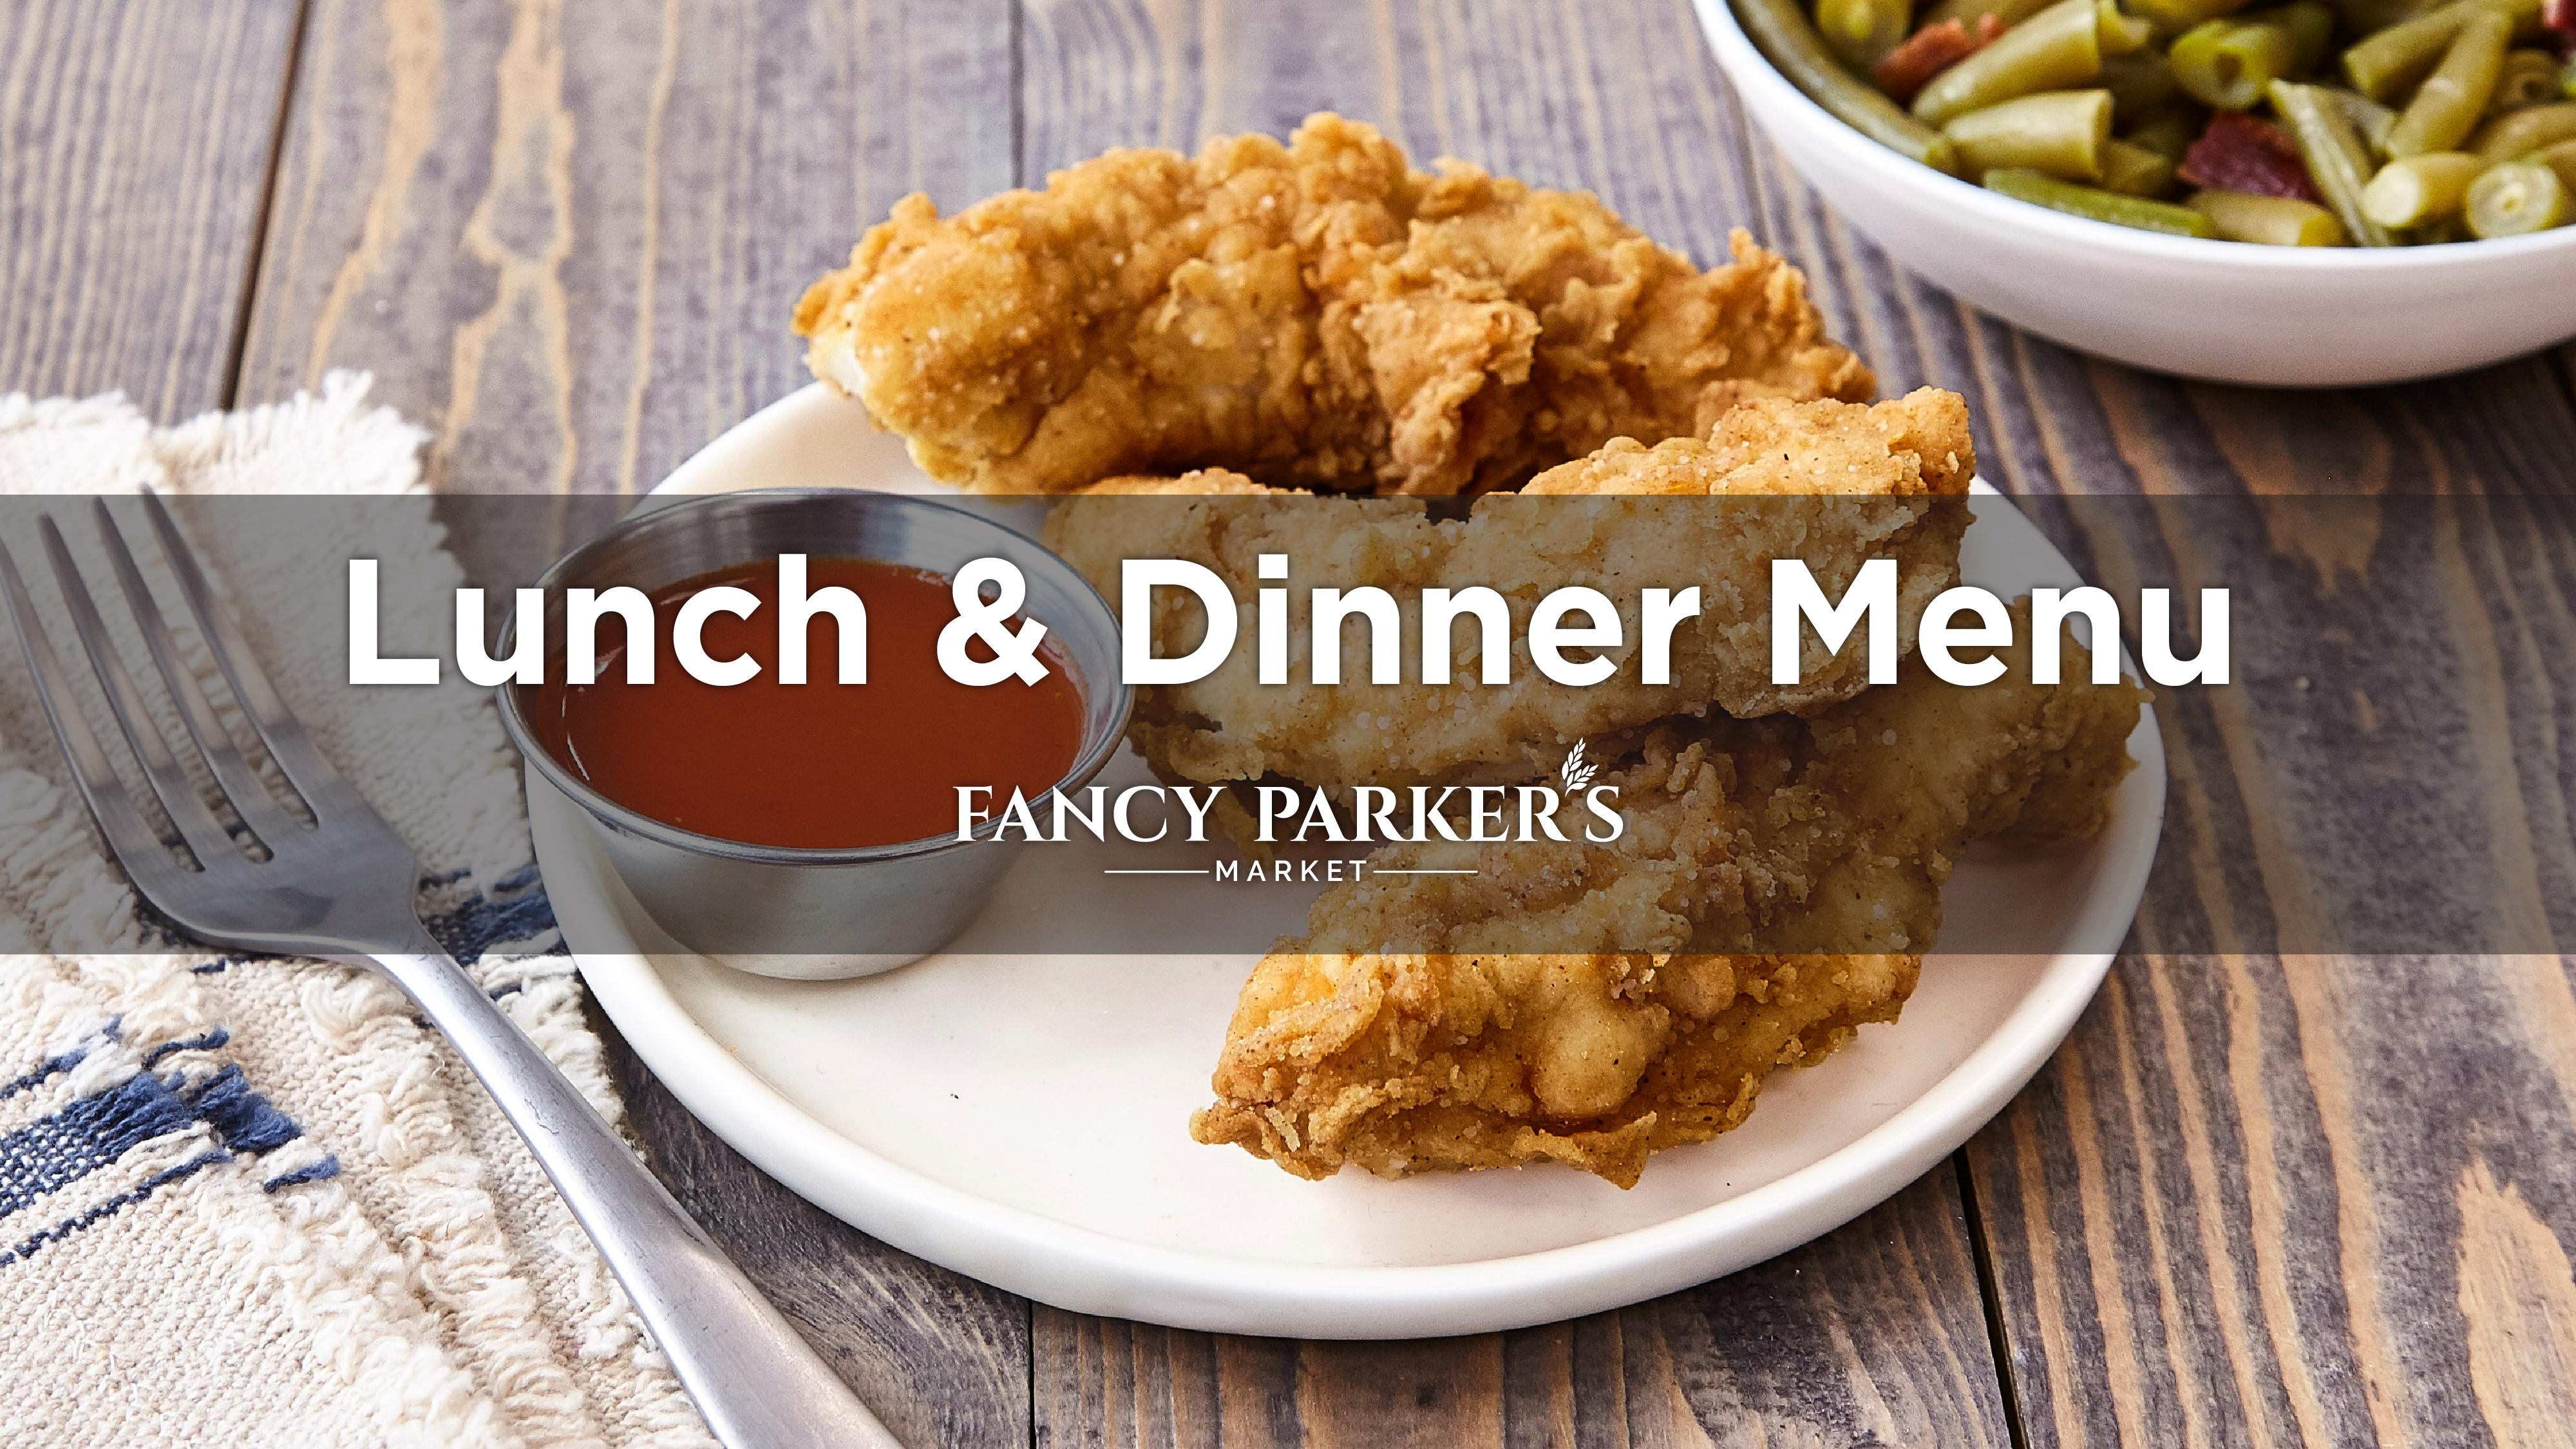 Fancy Parker's Lunch & Dinner Menu